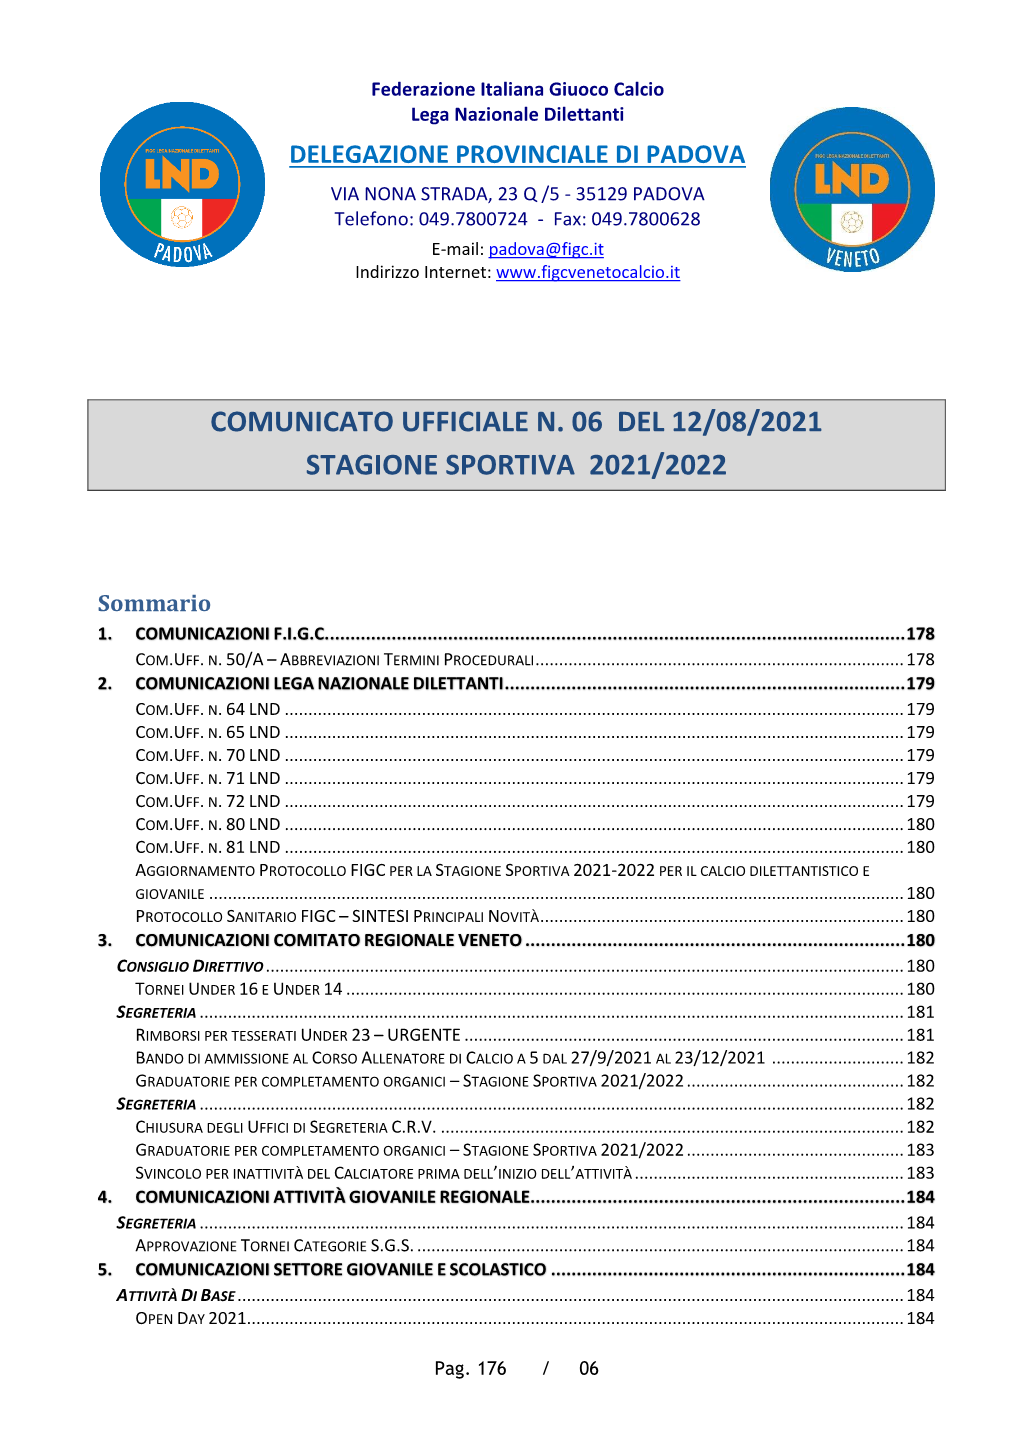 Comunicato Ufficiale N. 06 Del 12/08/2021 Stagione Sportiva 2021/2022